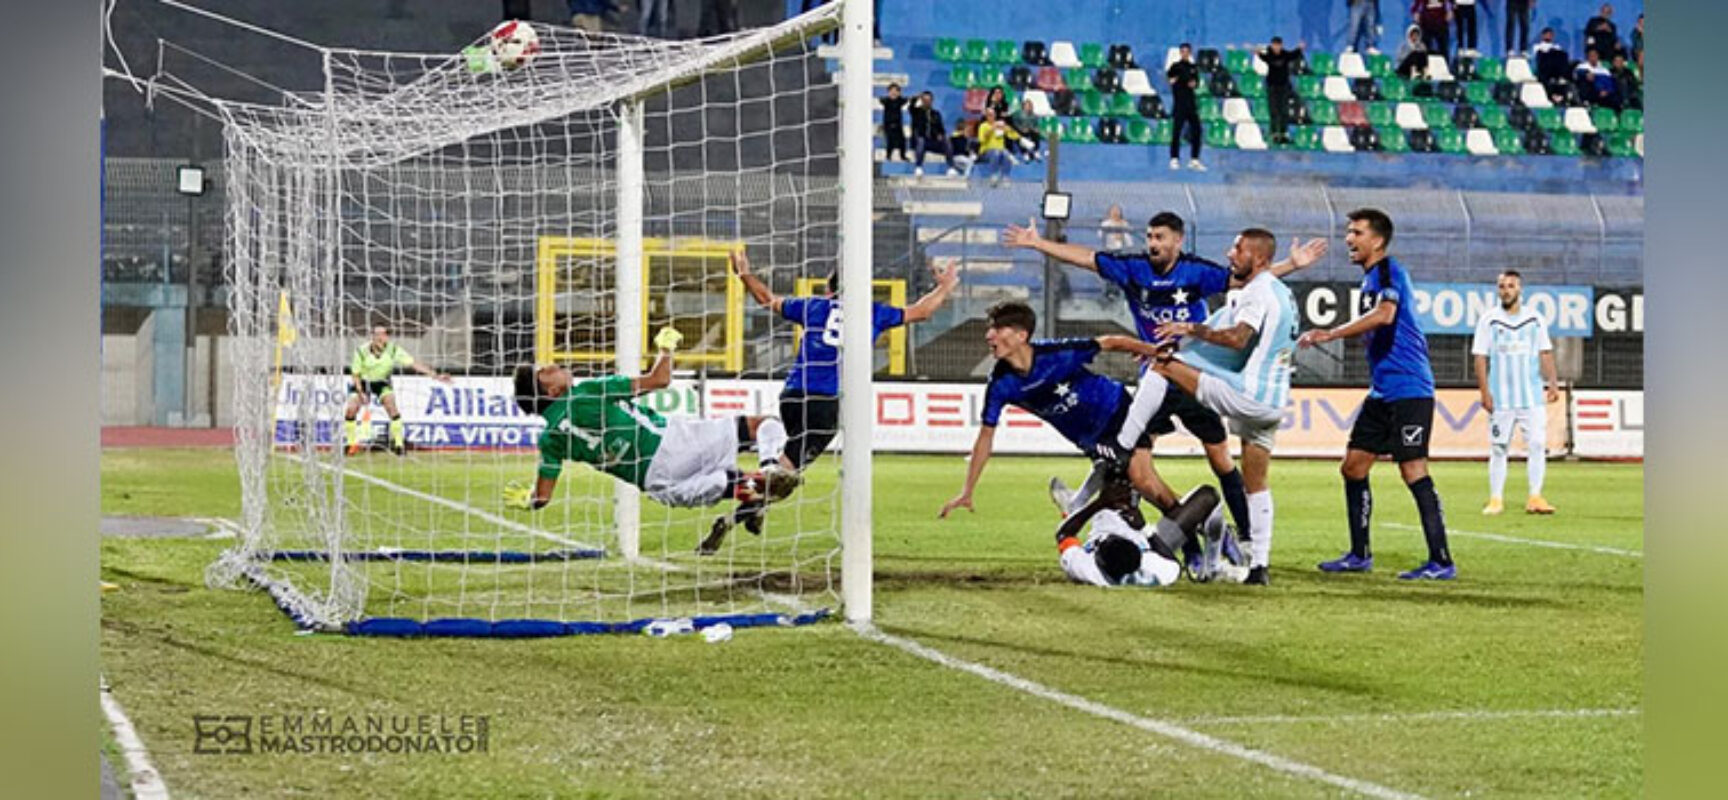 Coppa Italia d’Eccellenza: pari e gol tra Bisceglie e Mola